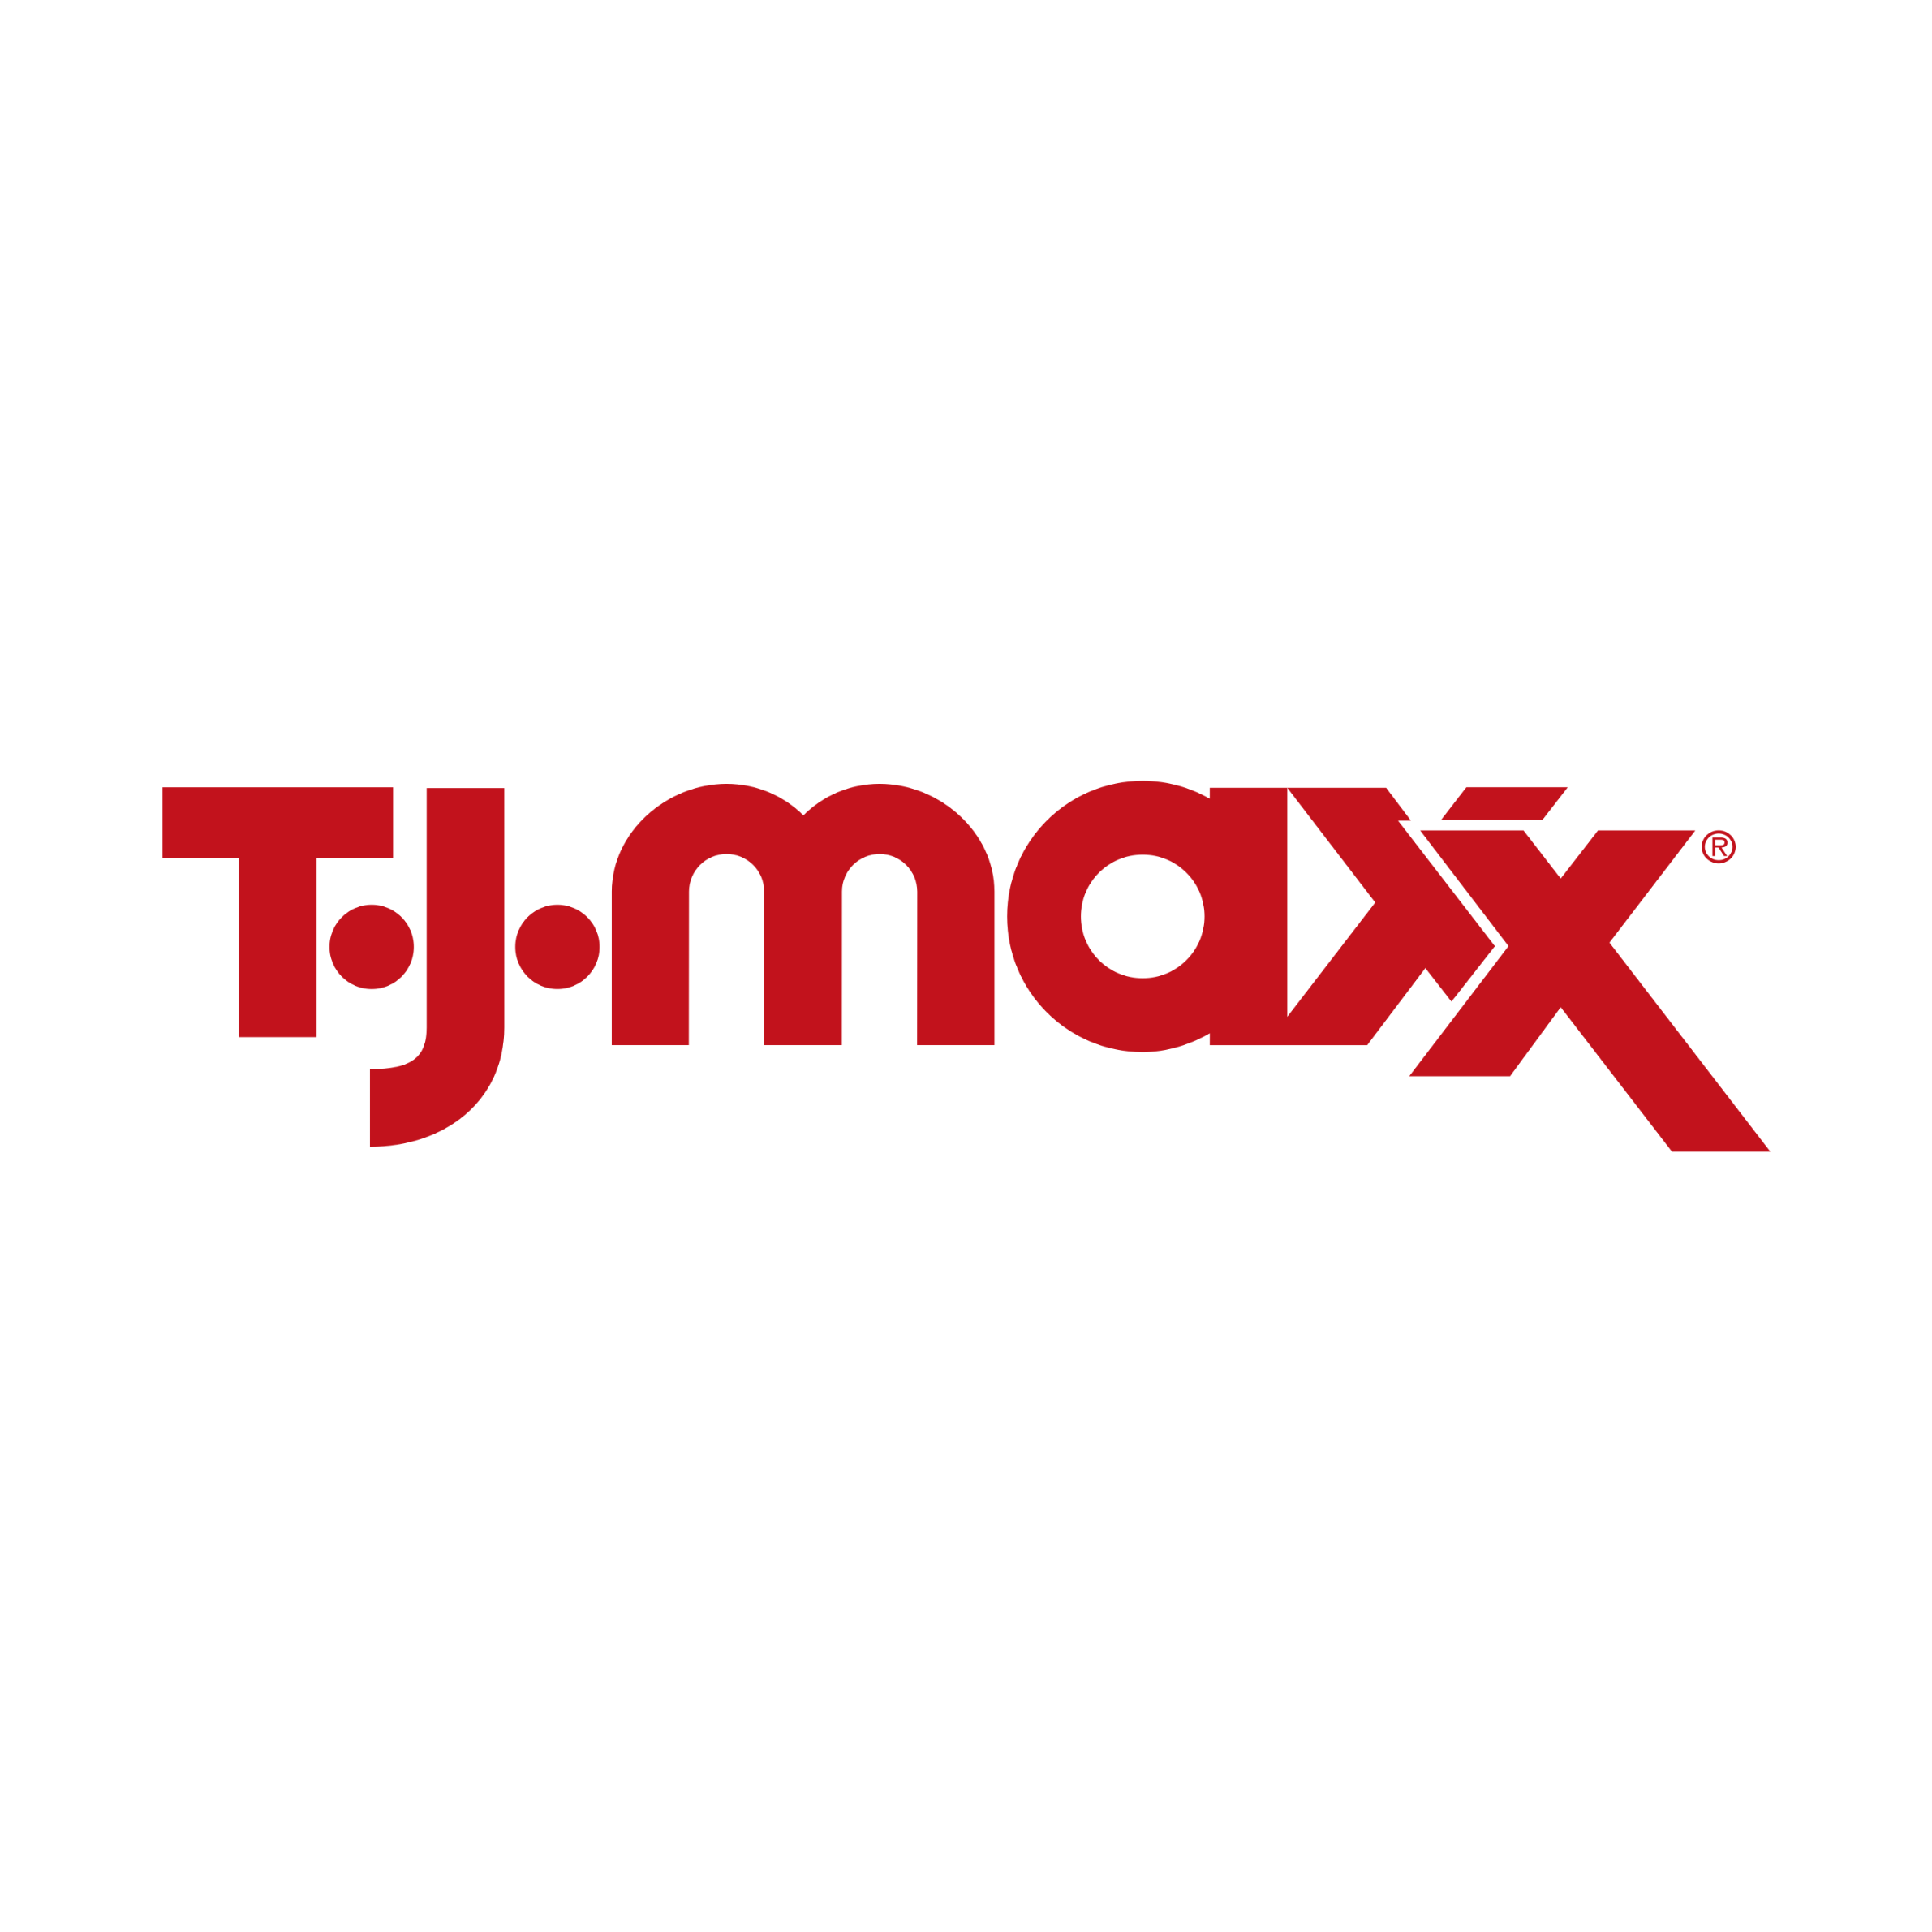 Oferta del Black Friday de TJ Maxx